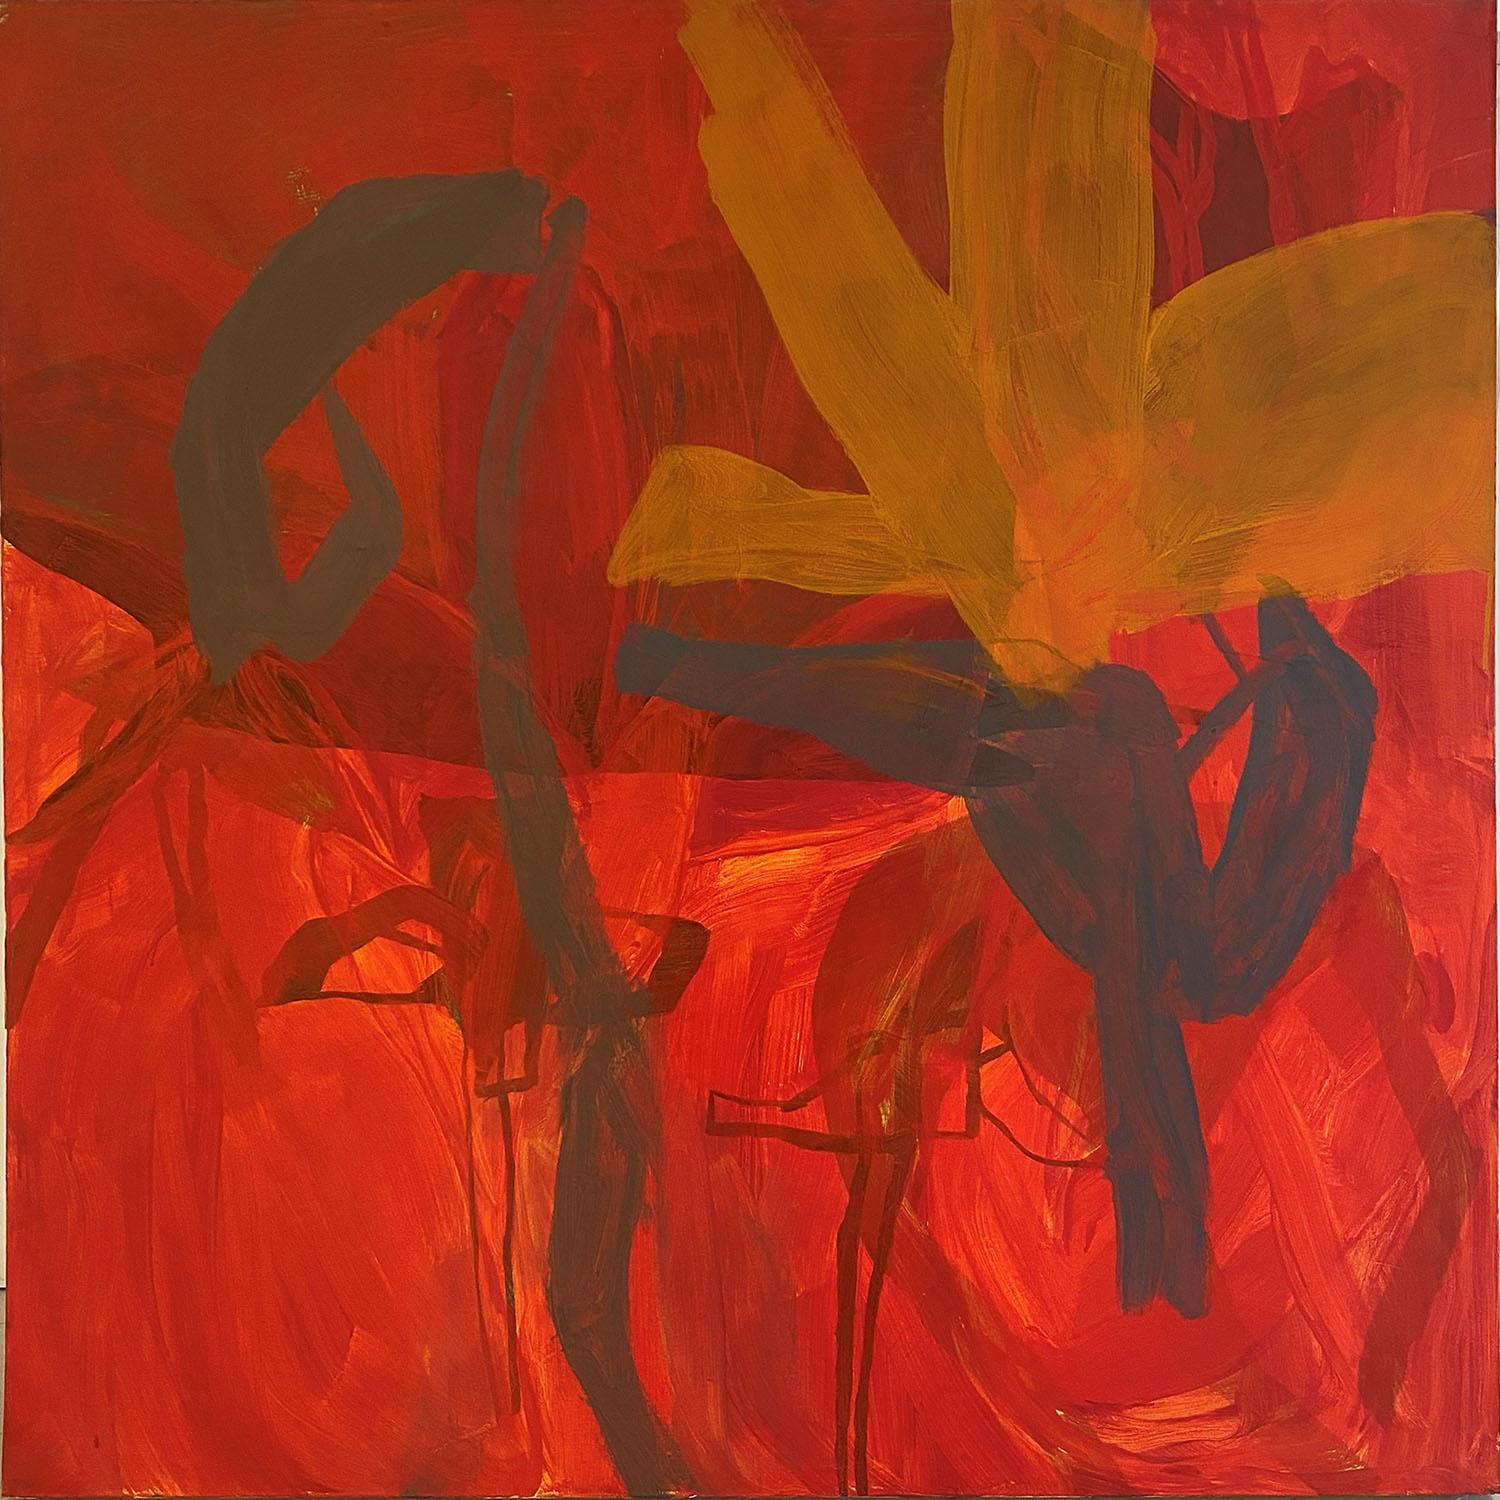 Abstract Painting Anne Francey - carré rouge moderne abstrait, peinture acrylique sur toile